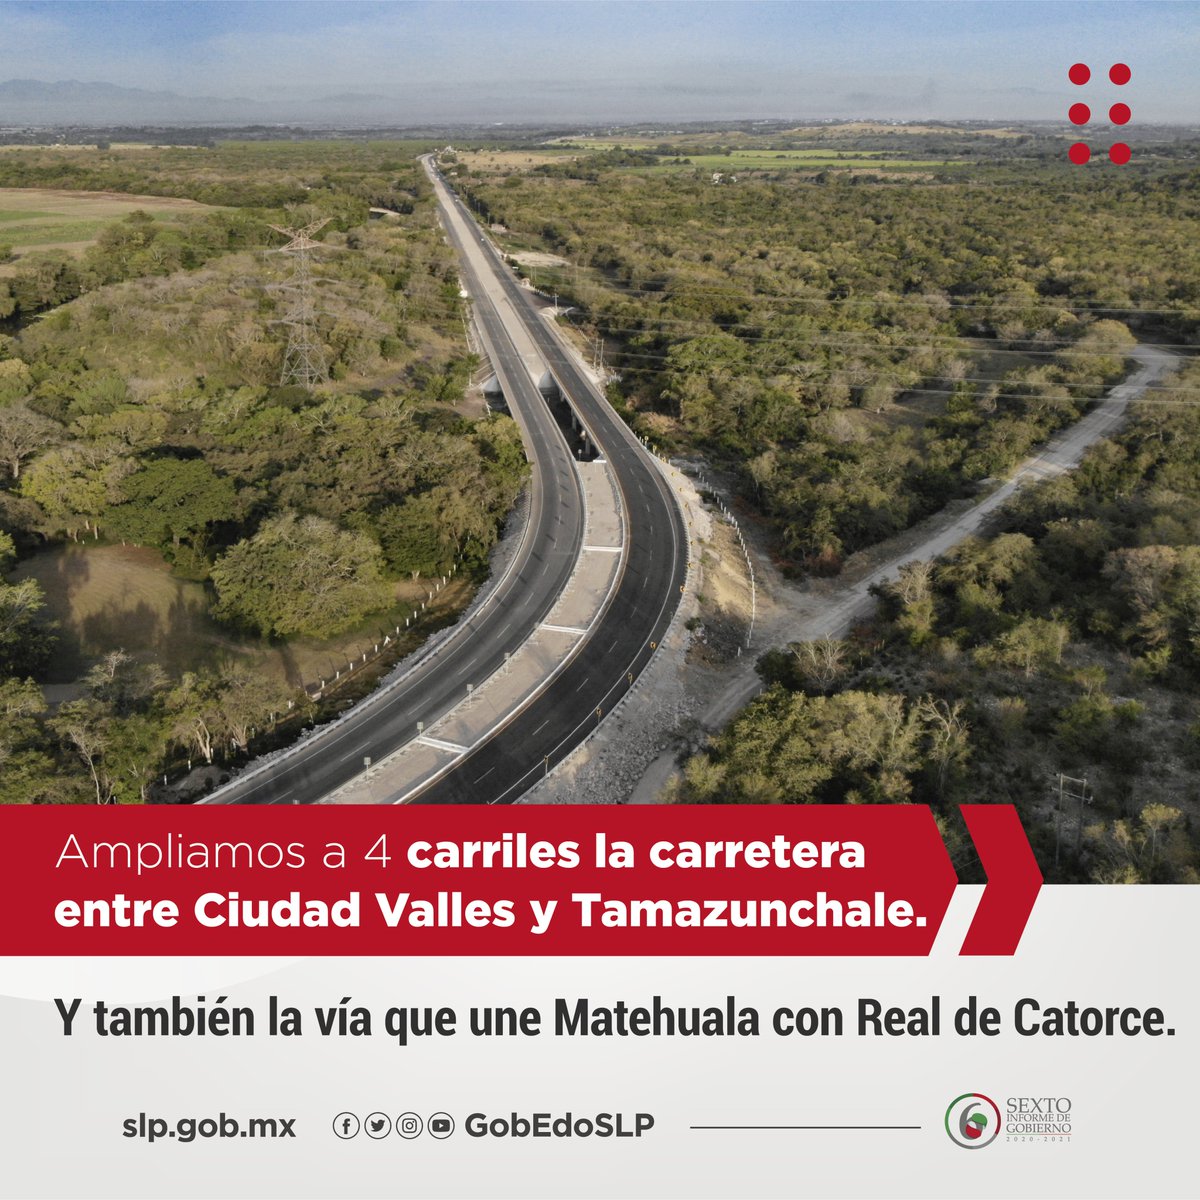 Modernizamos y ampliamos a 4 carriles la carretera entre Ciudad Valles y Tamazunchale. Mejoramos la movilidad en la Zona Metropolitana, con la construcción del Puente sobre Avenida Industrias y la ampliación al Puente Pemex.
#ProsperamosJUNTXS
#InformeJMCarreras